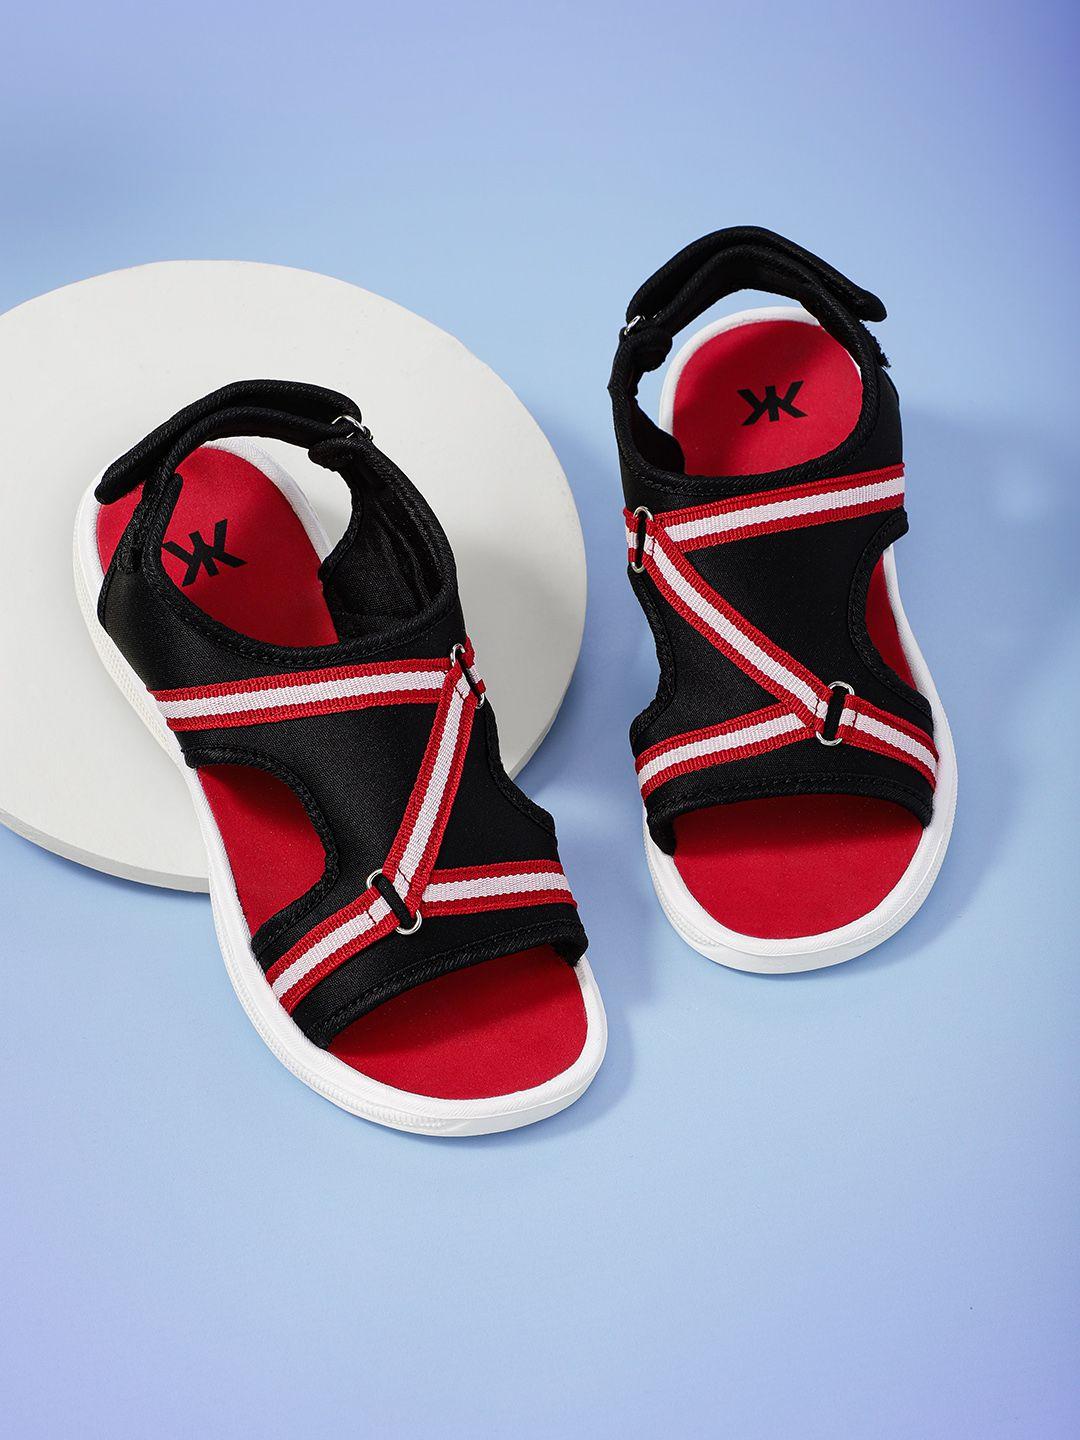 kook n keech women black & red striped sports sandals